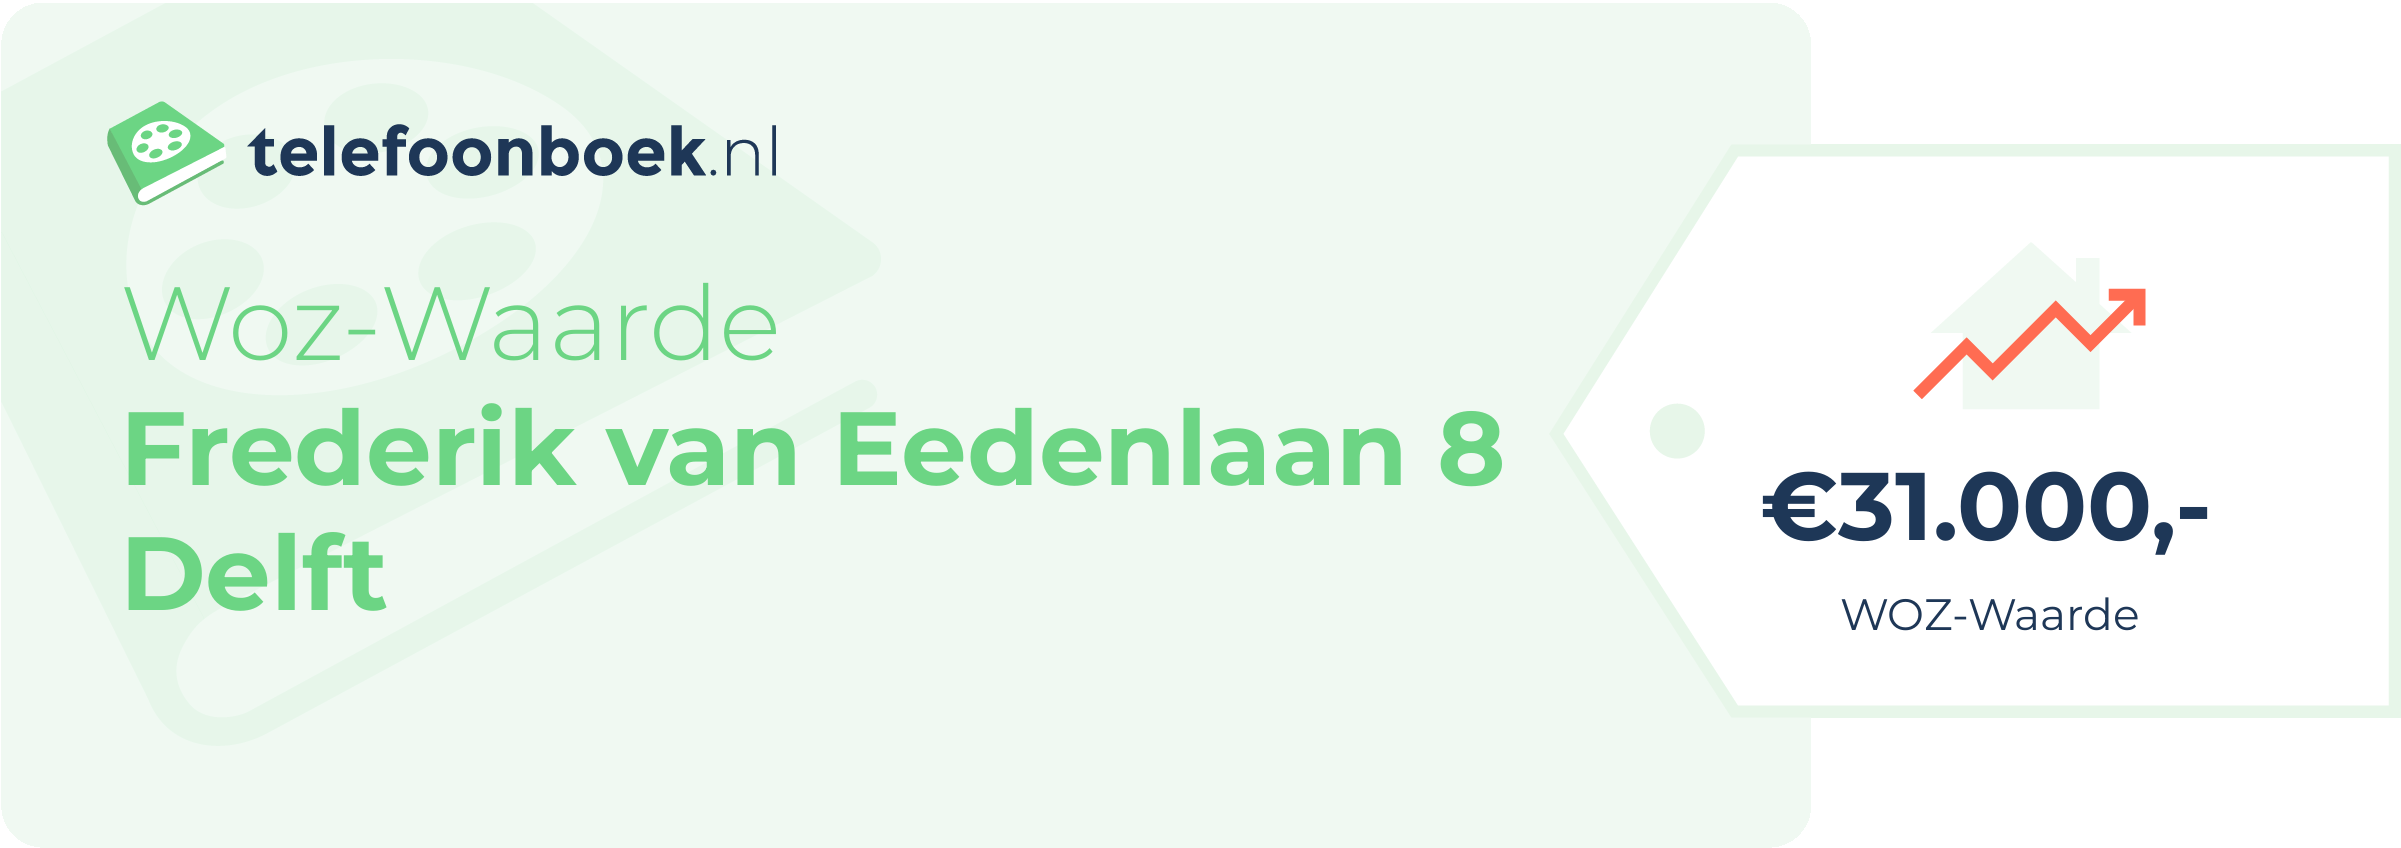 WOZ-waarde Frederik Van Eedenlaan 8 Delft